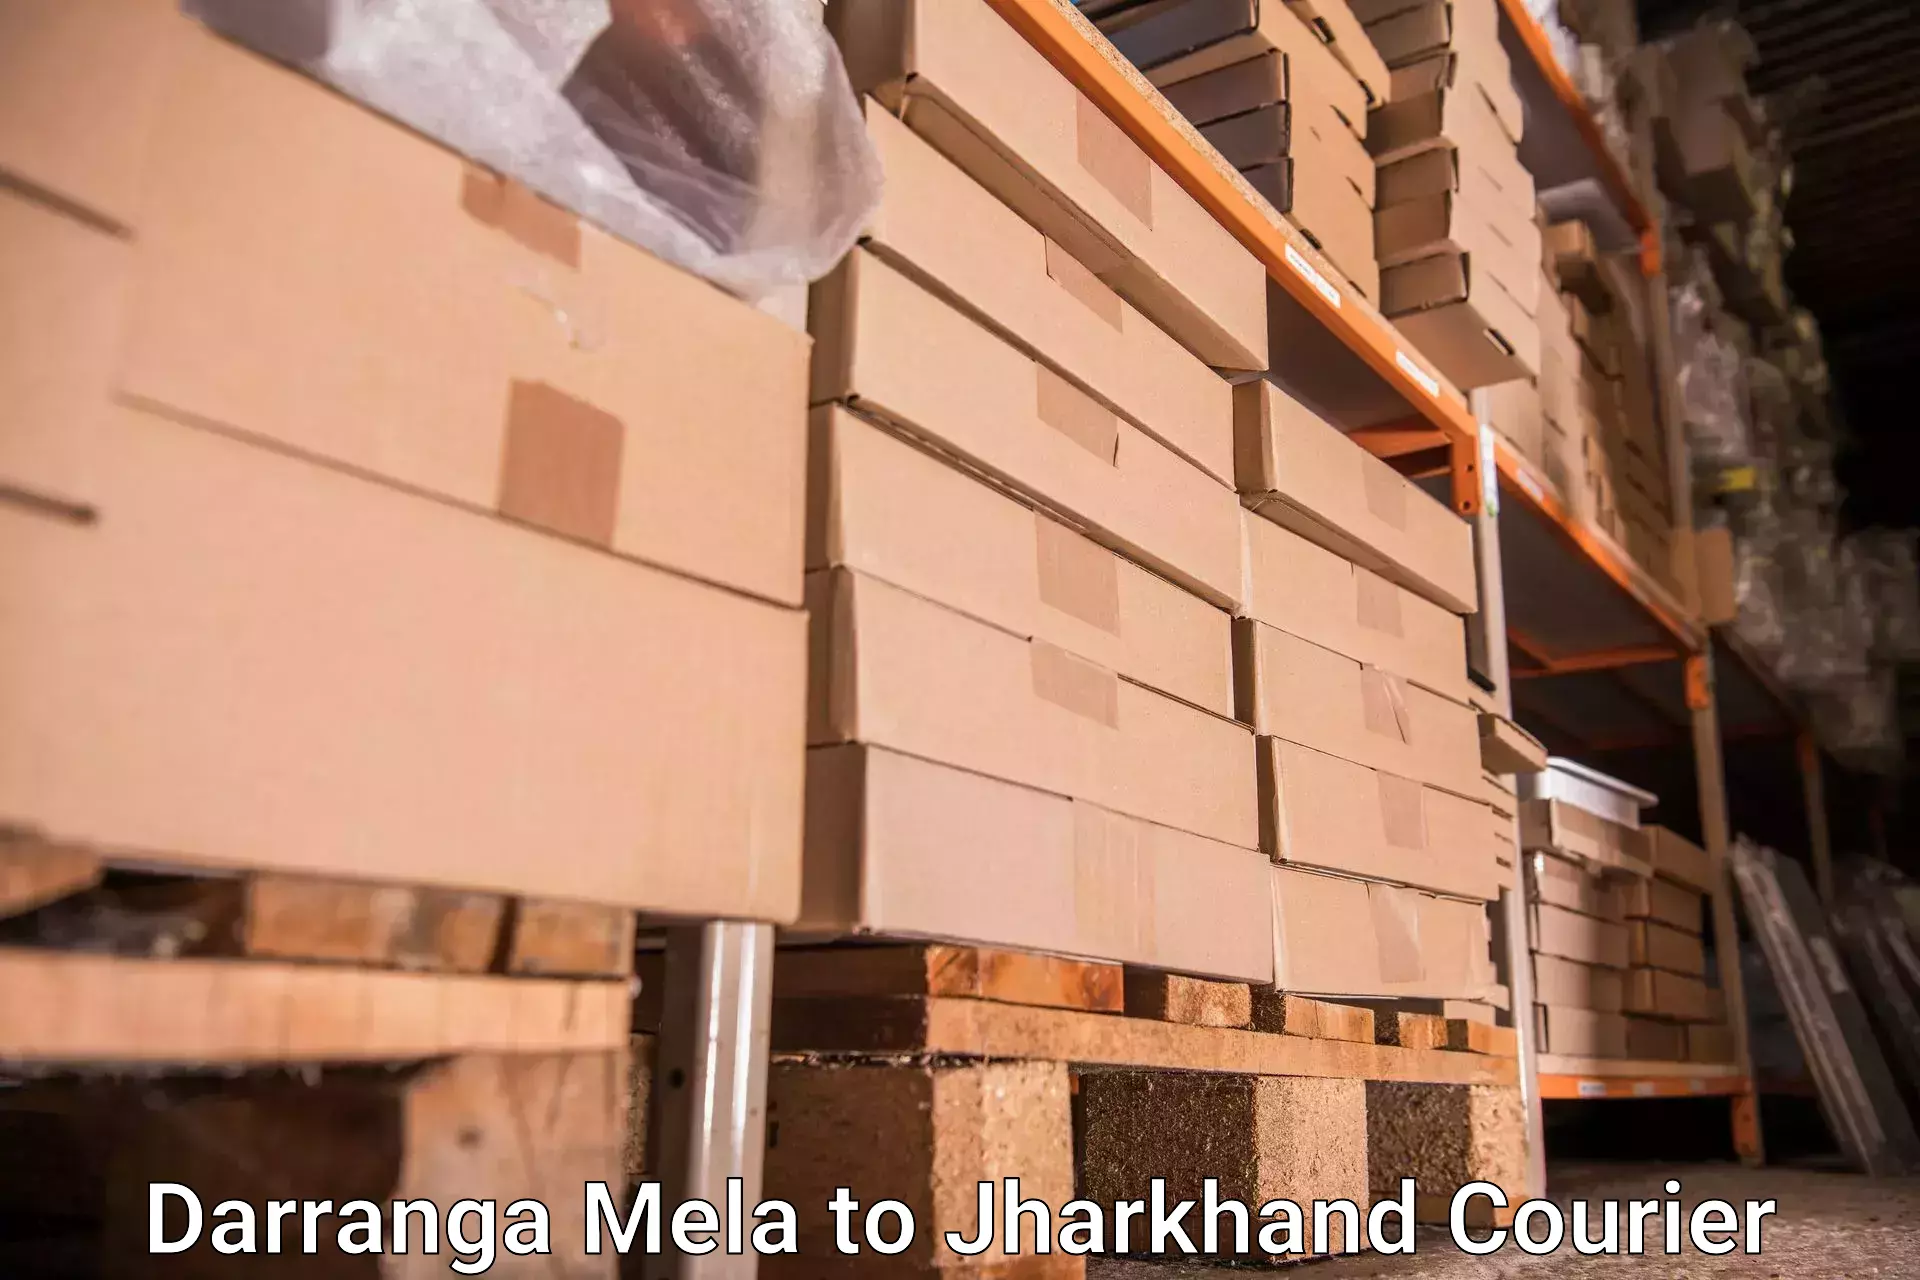 Baggage shipping schedule Darranga Mela to Panki Palamu